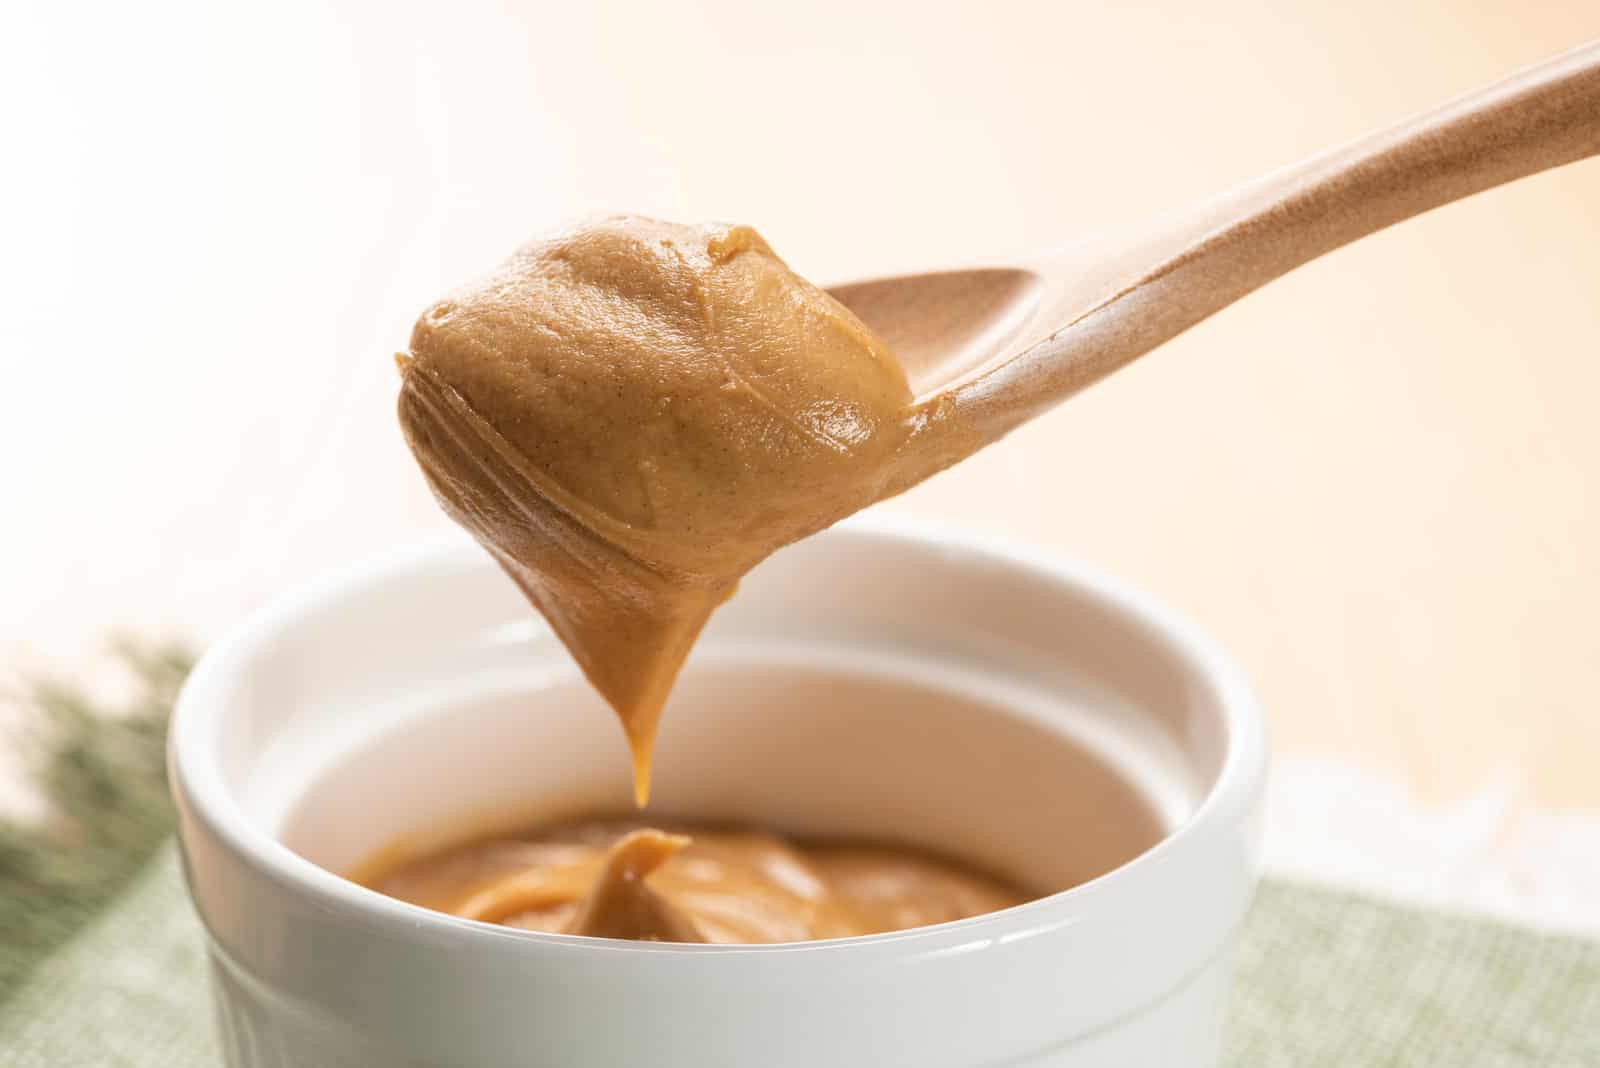 Peanut butter on wooden spoon